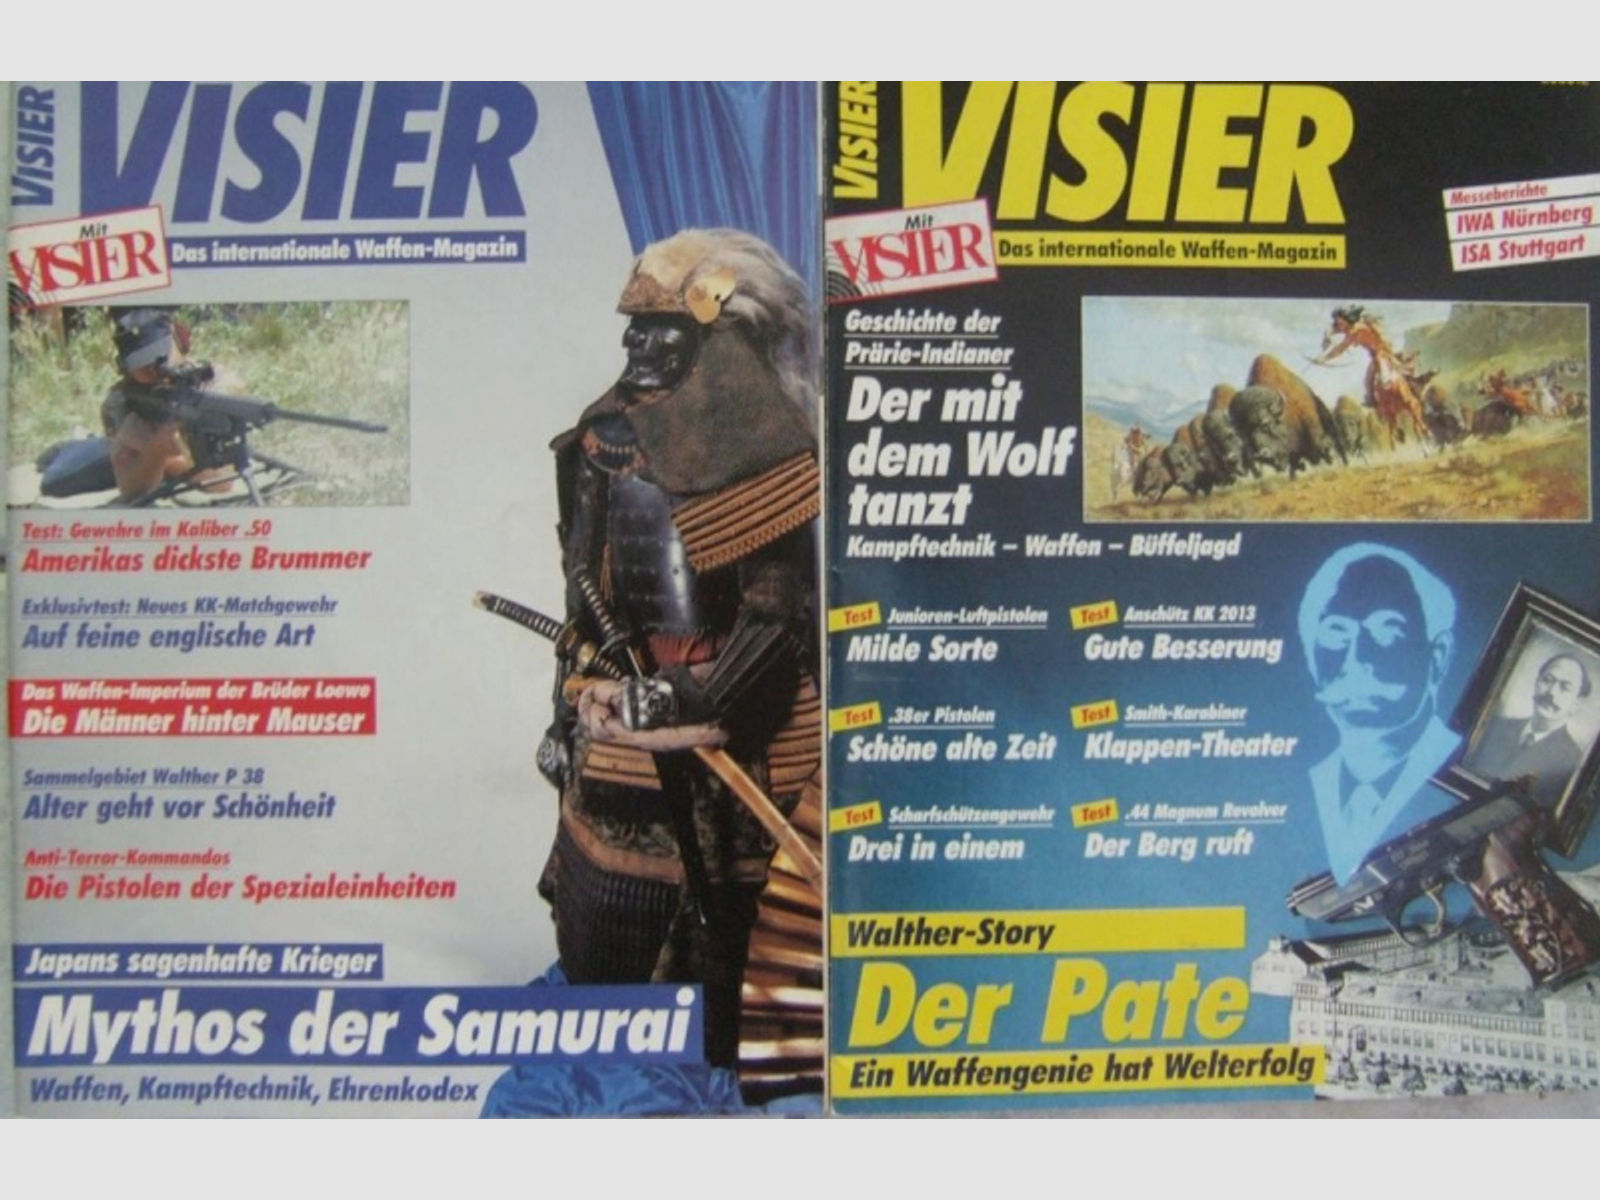 Walther P38 / P1 als Sammelgebiet + Walther Story, Visier im Visier-Doppelpack (zwei Hefte), Top!